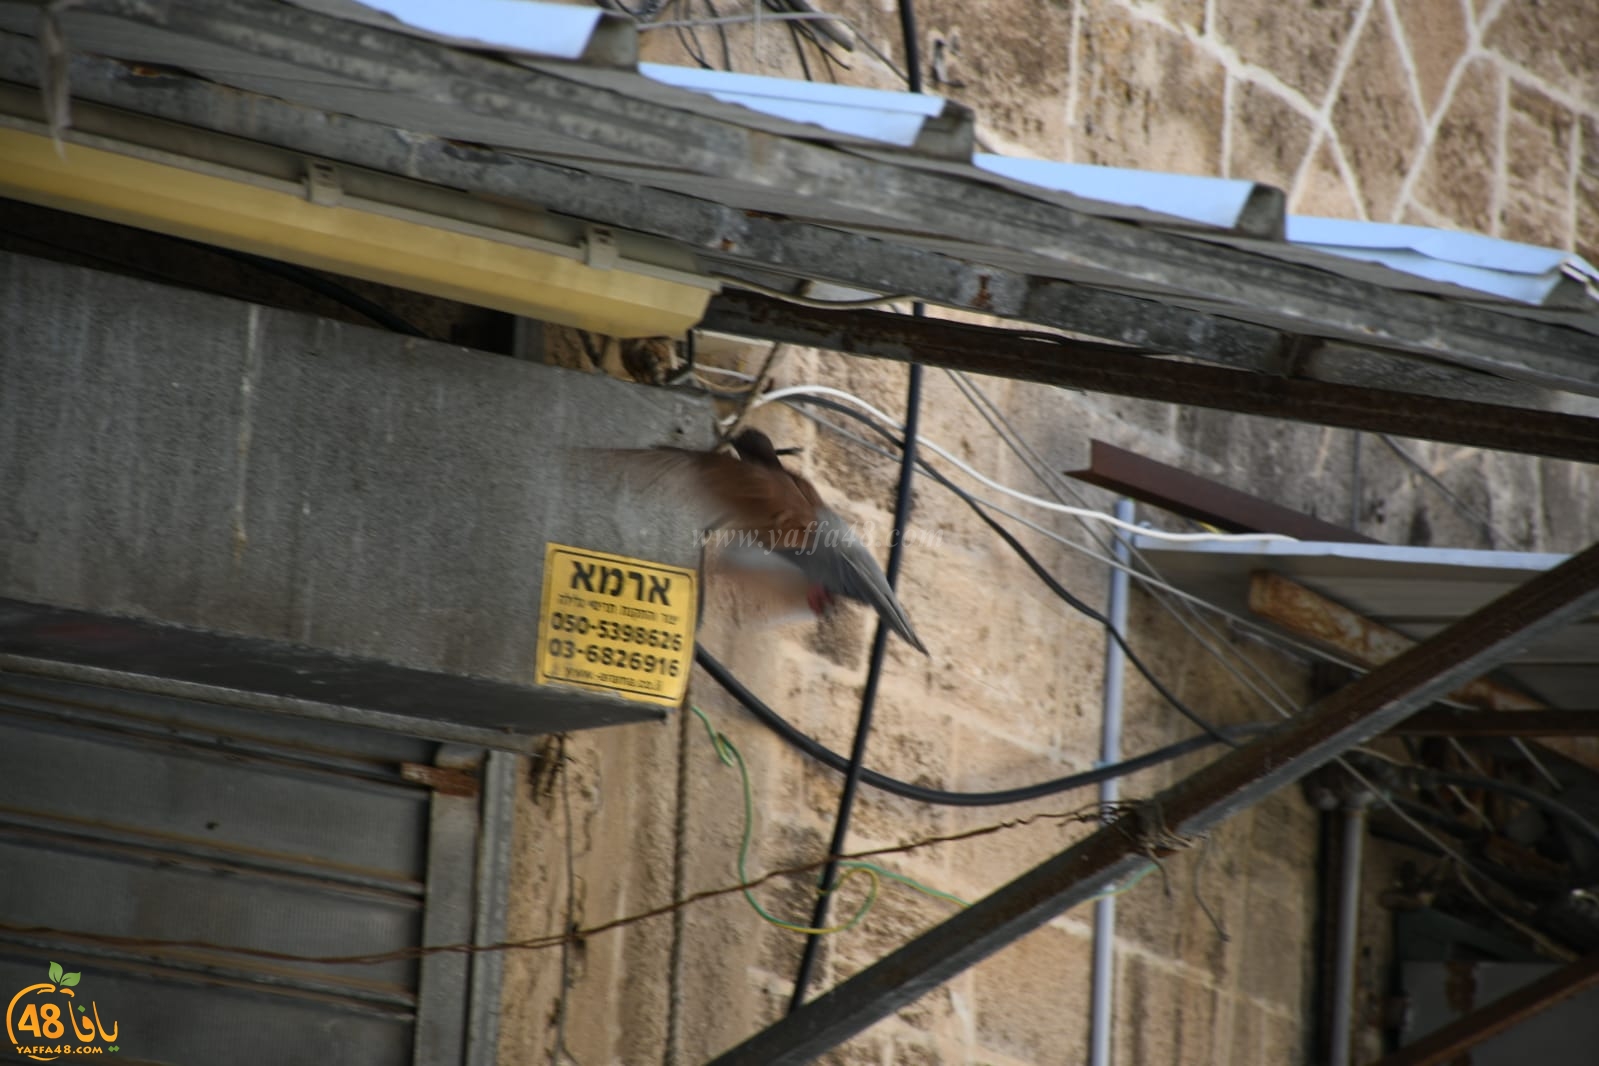  بالصور: صديق الموقع يُوثّق مراحل بناء حمامة لعشها في يافا 